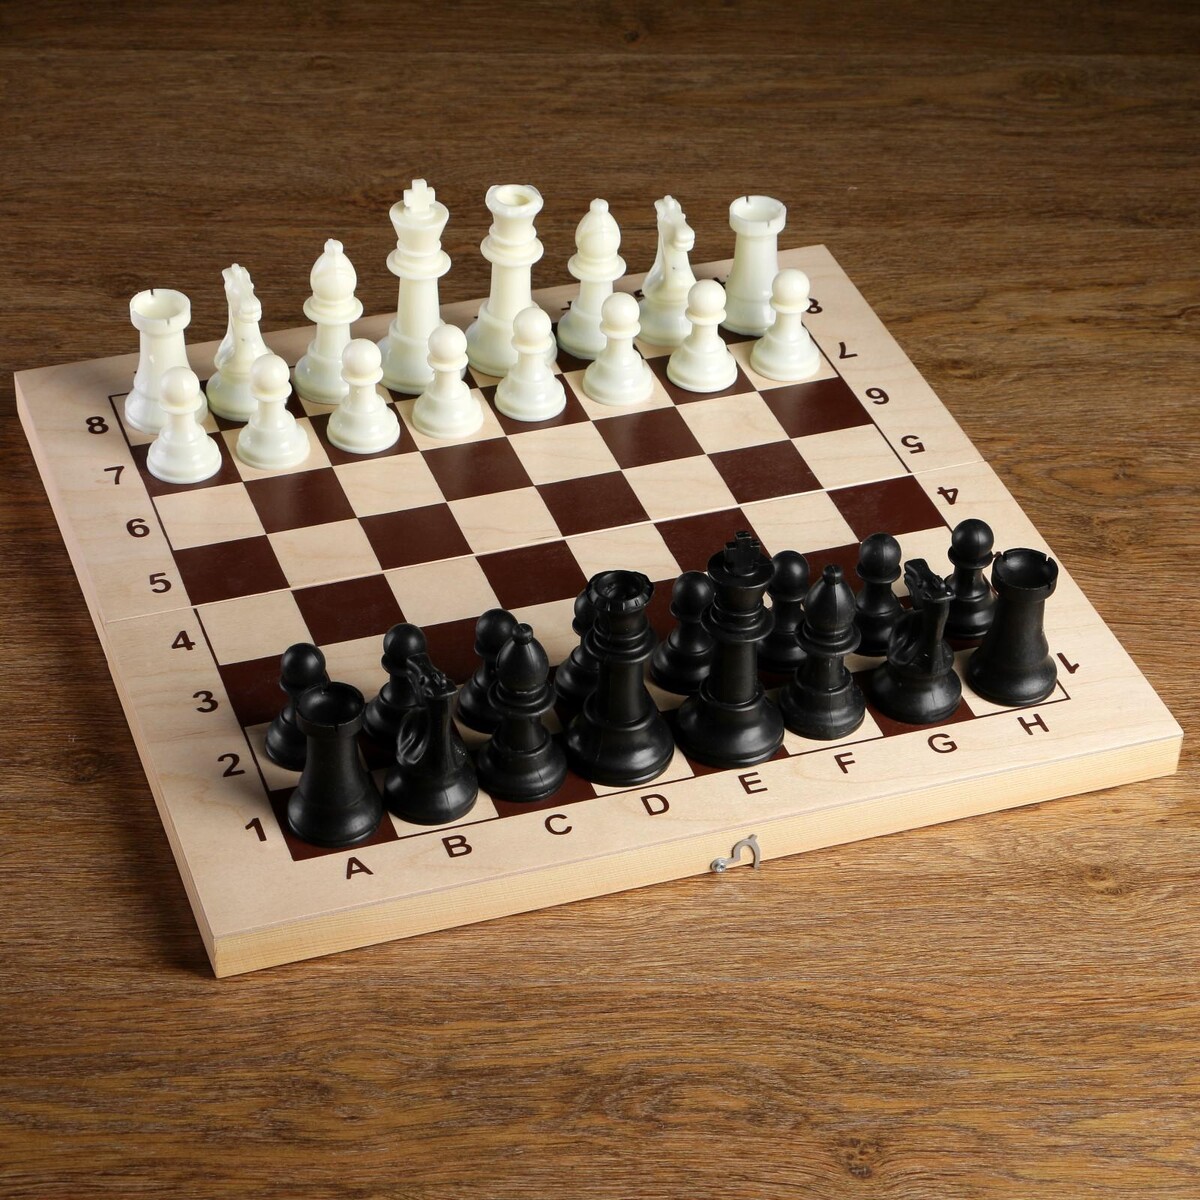 Шахматные фигуры, пластик, король h-10.5 см, пешка h-5 см голый король